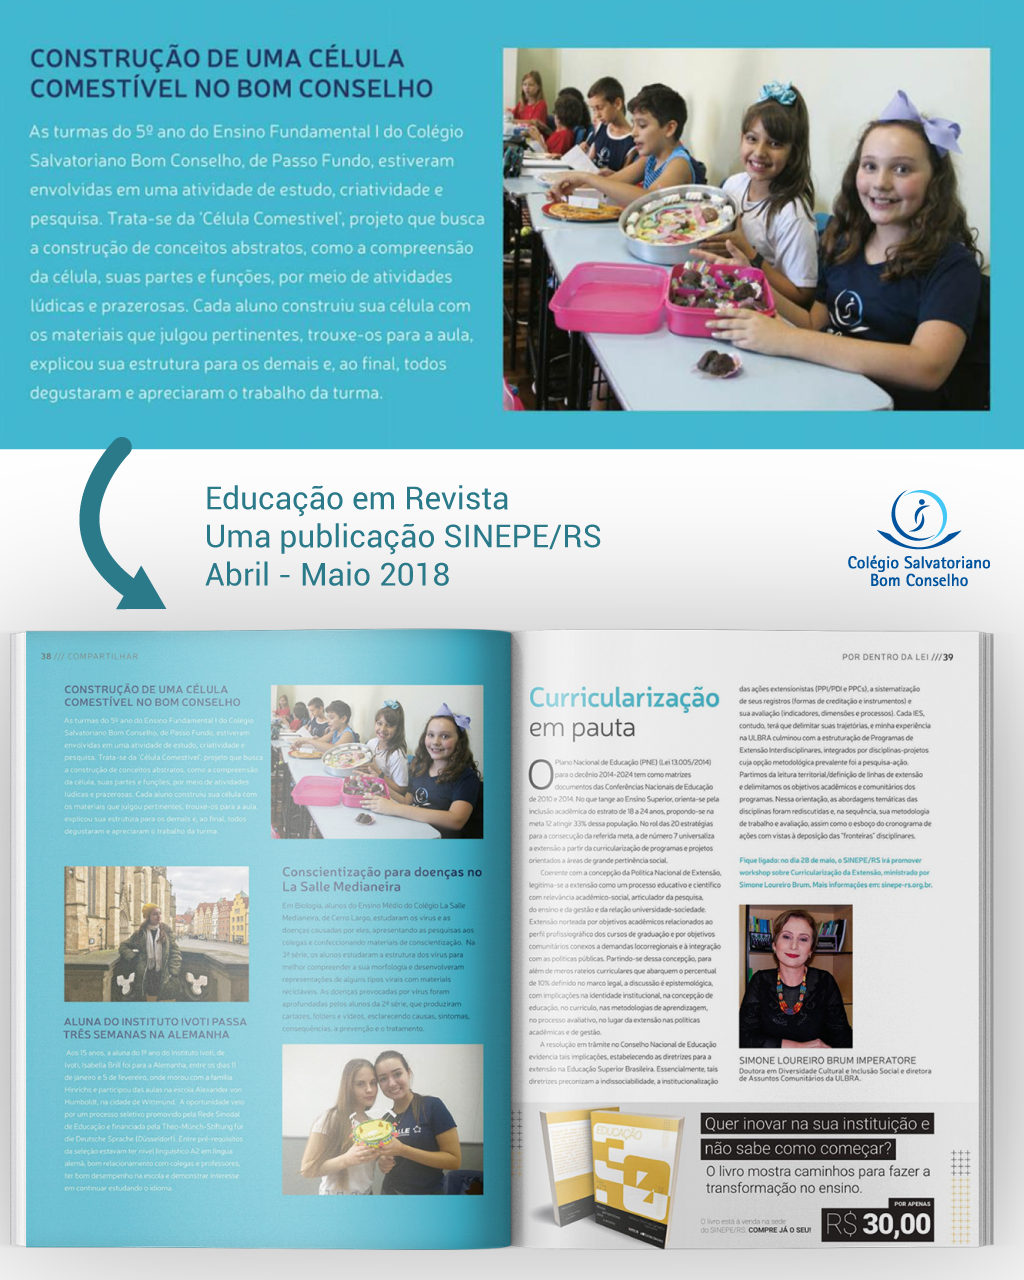 Educação em Revista - Sinepe/RS